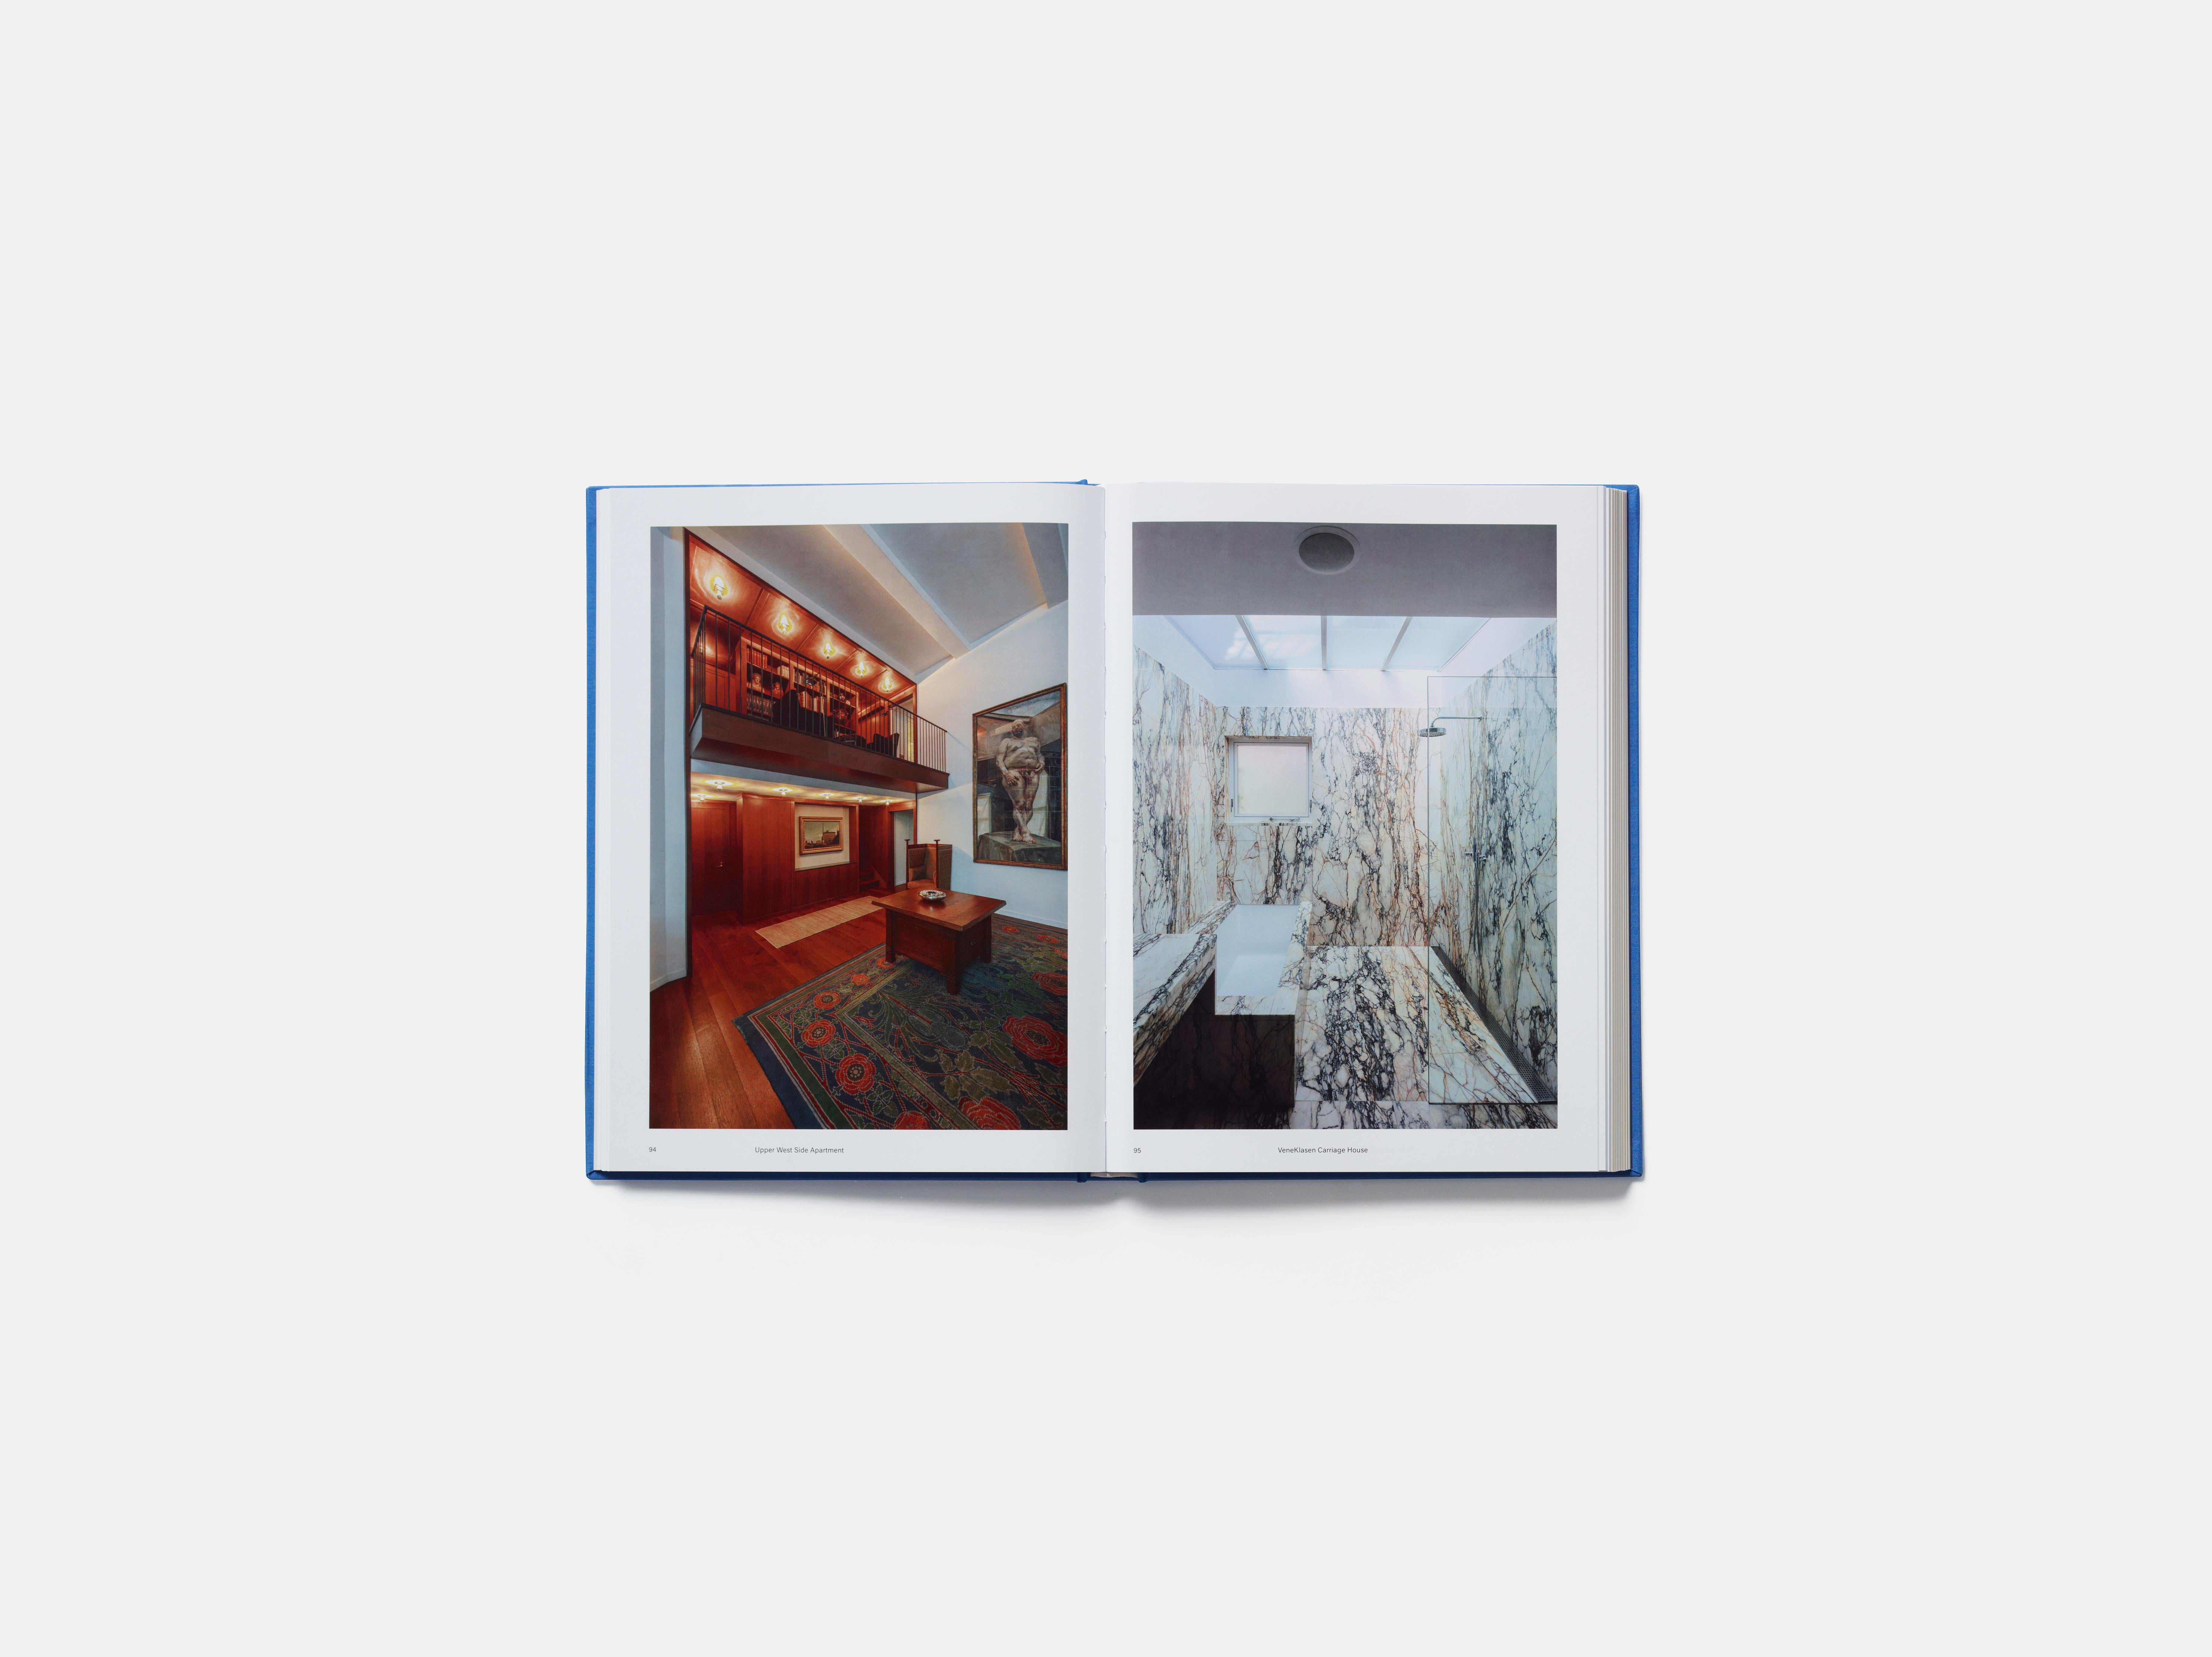 Un ouvrage complet sur Selldorf Architects, avec un regard détaillé sur les musées, les résidences et les bâtiments publics que le cabinet a conçus aux États-Unis et à l'étranger.

Annabelle Selldorf, directrice fondatrice, est née à Cologne, en